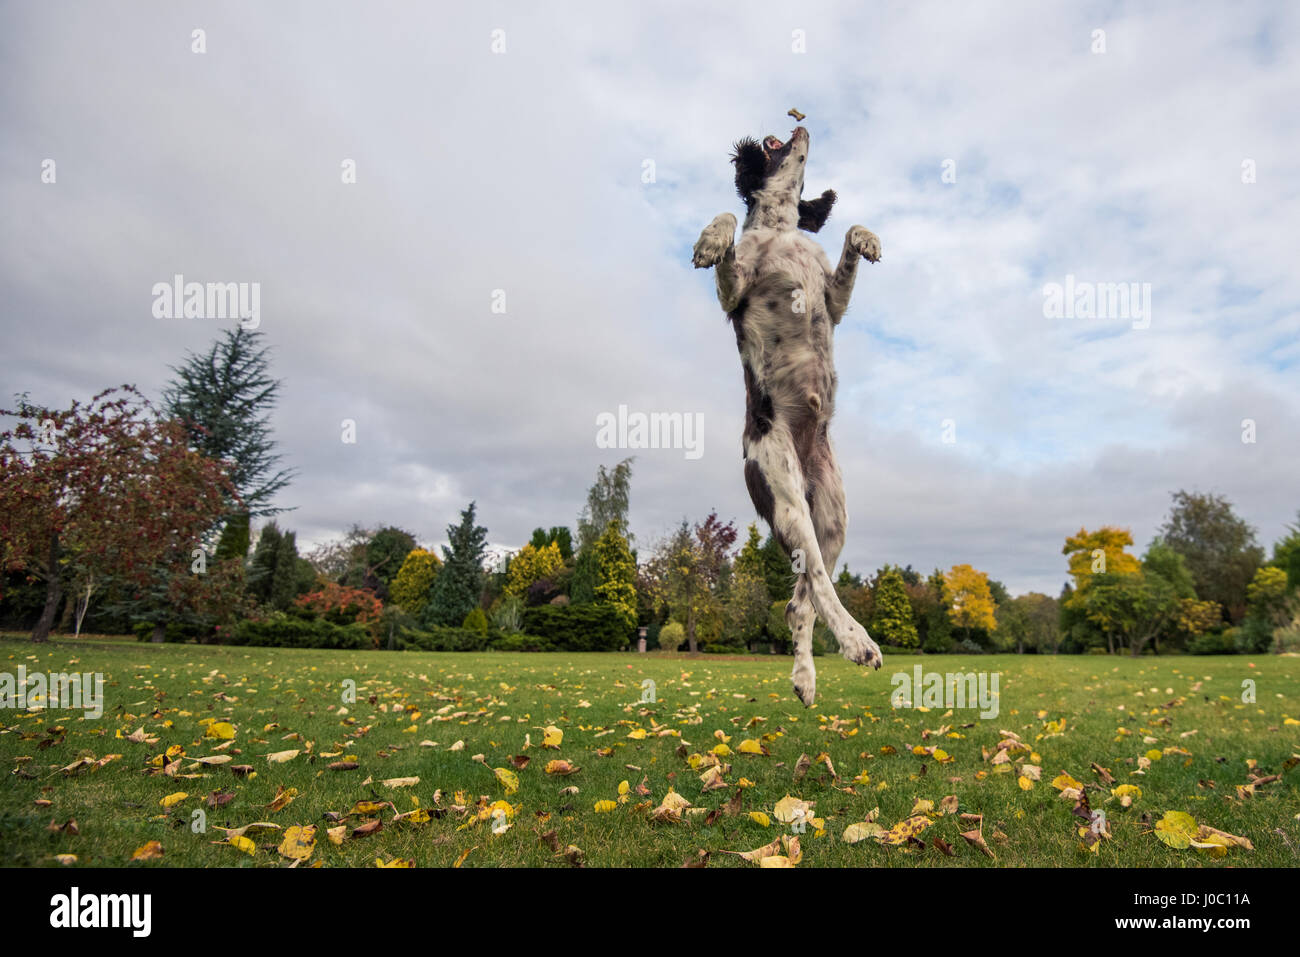 Springer Spaniel leaping for treat, UK Stock Photo